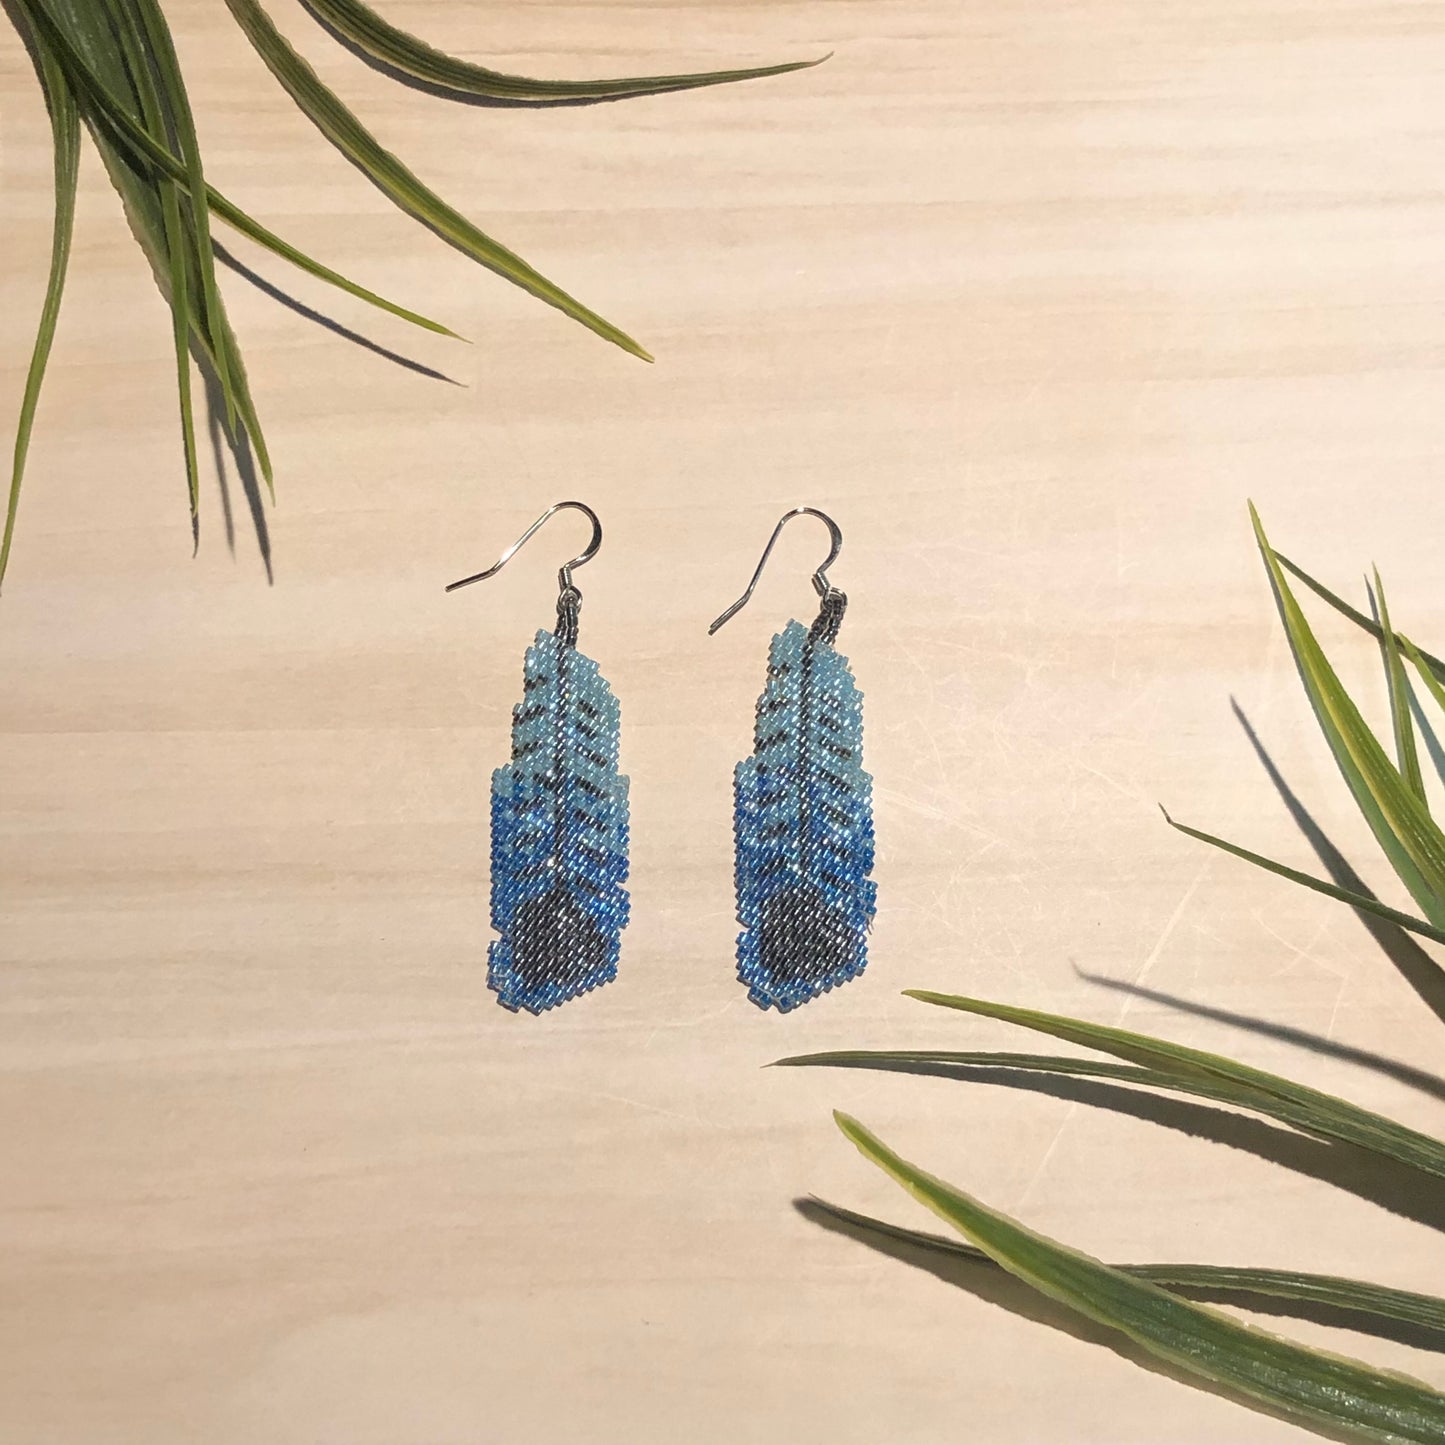 Matsheshu creations - Beaded feather earrings